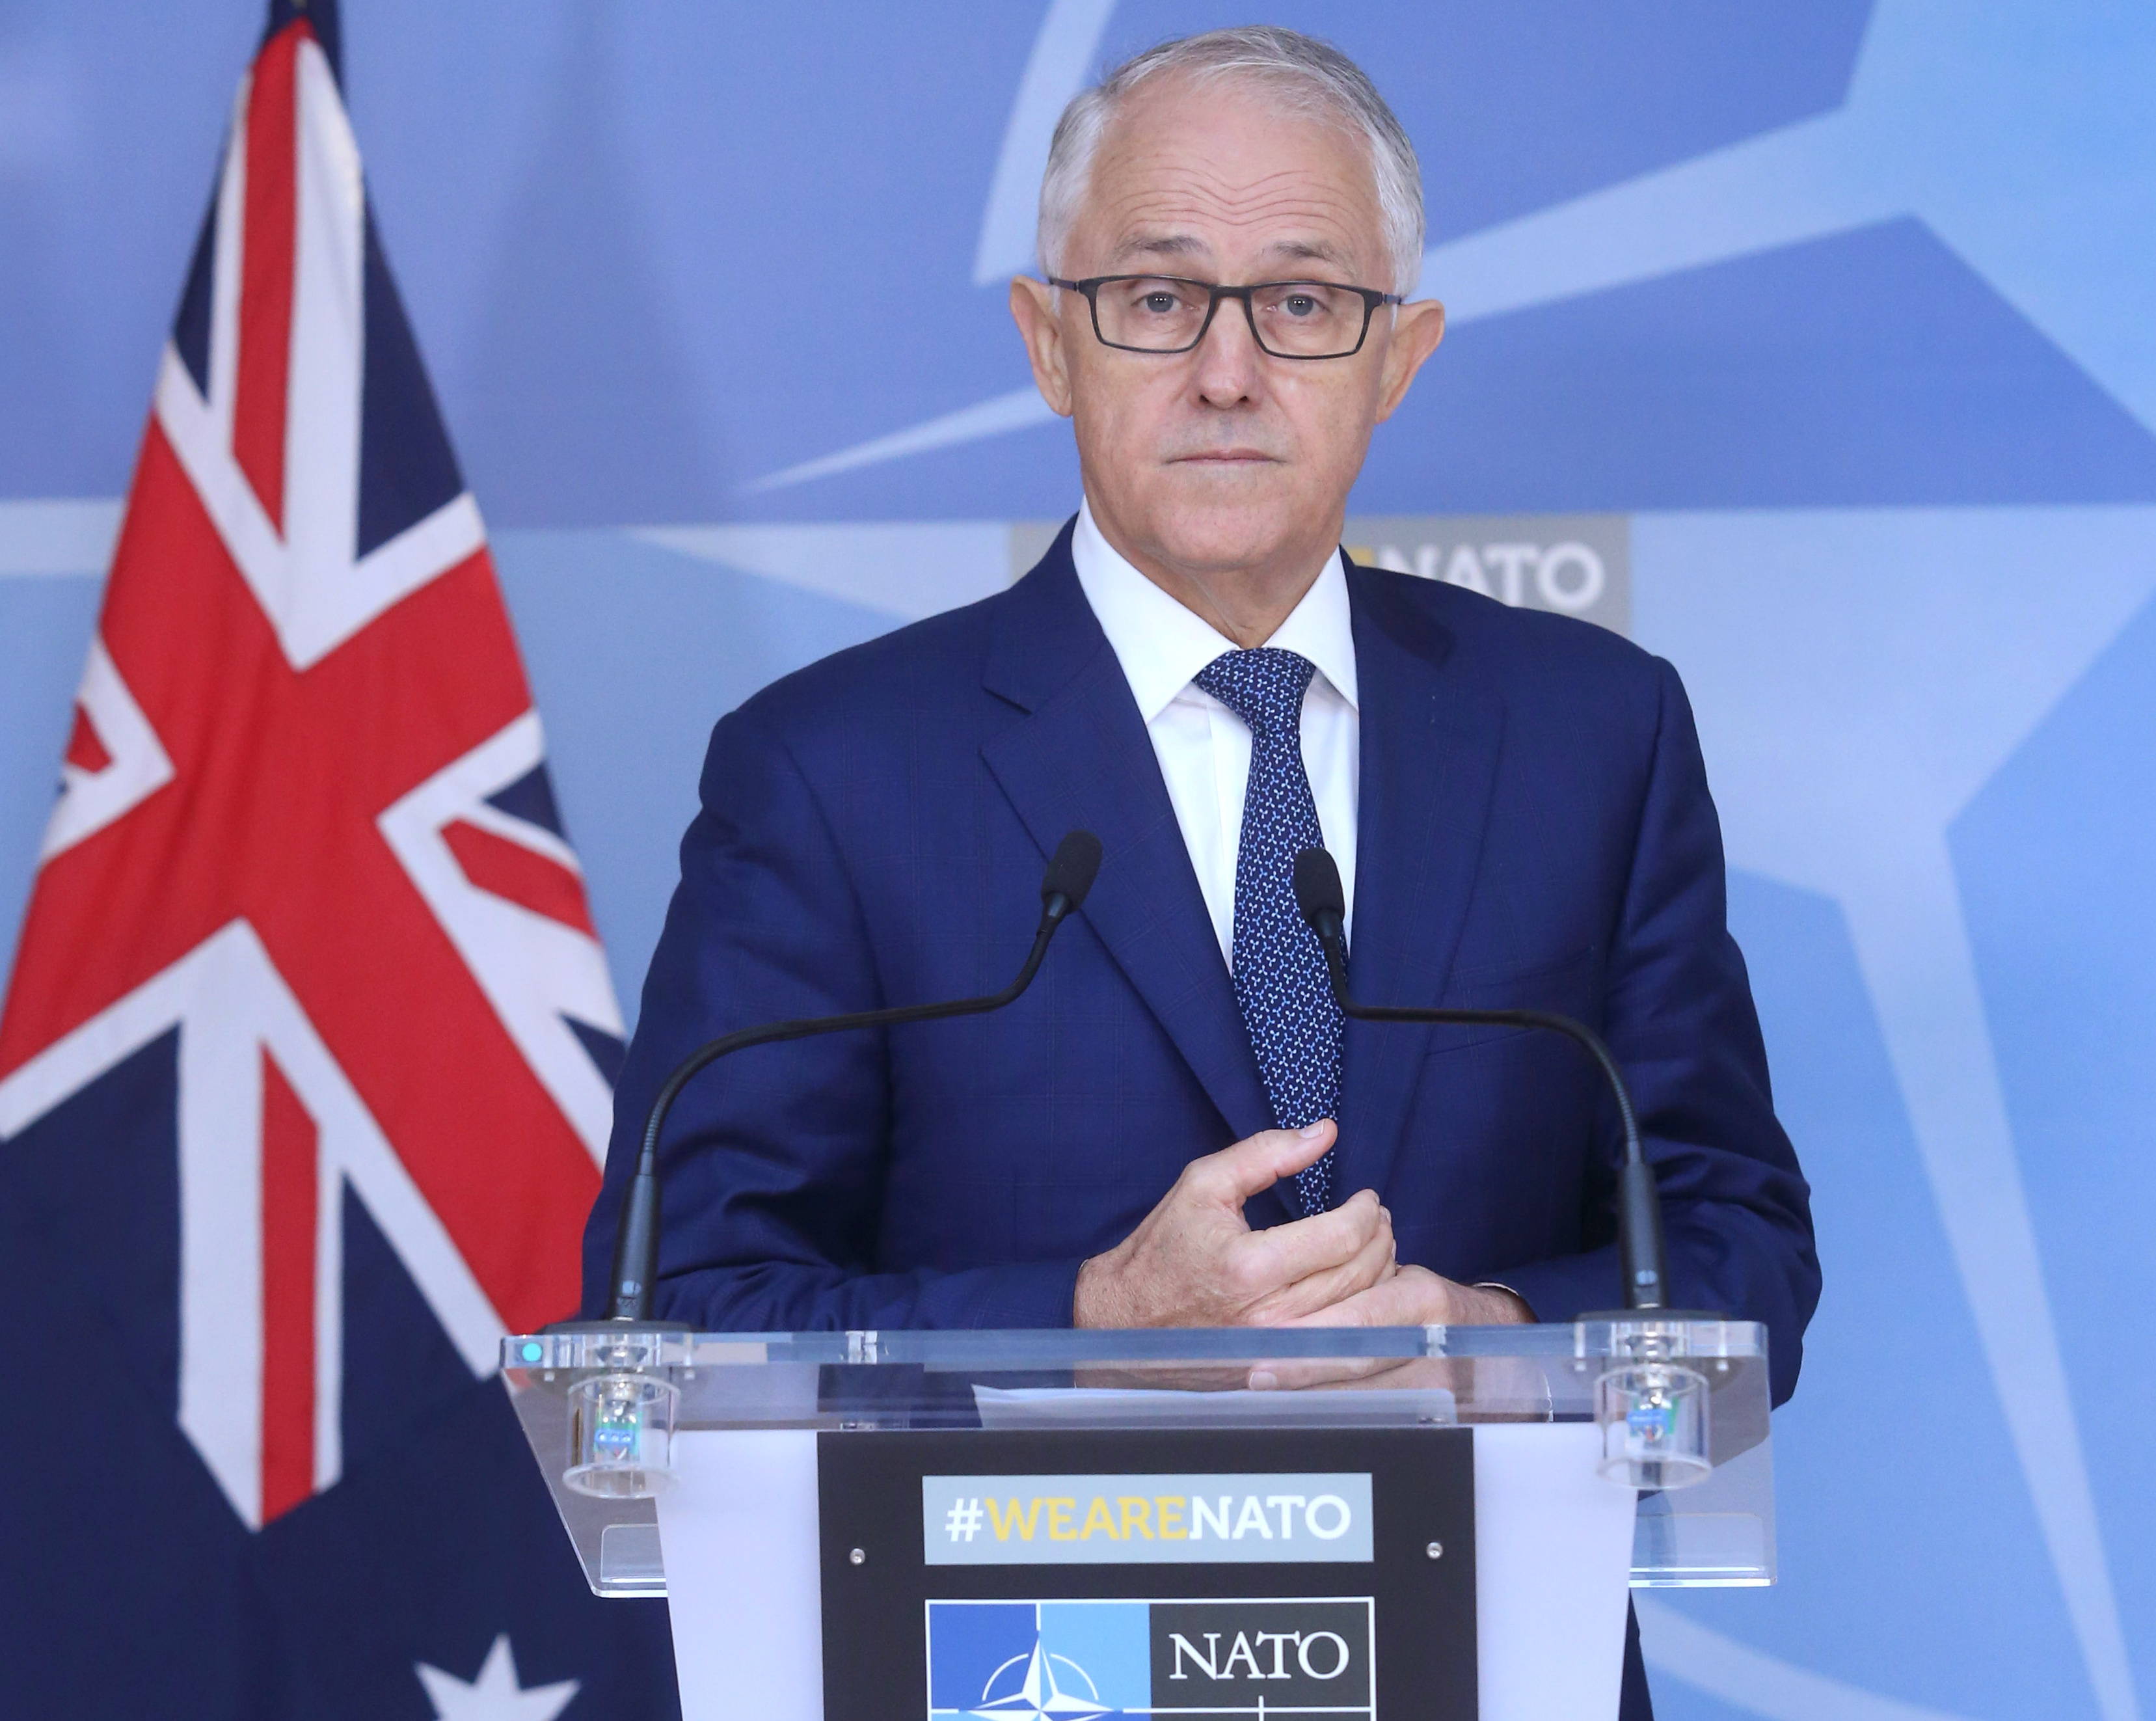 Vind ånd Praktisk Former Australian PM Turnbull joins Fortescue's green unit | Reuters